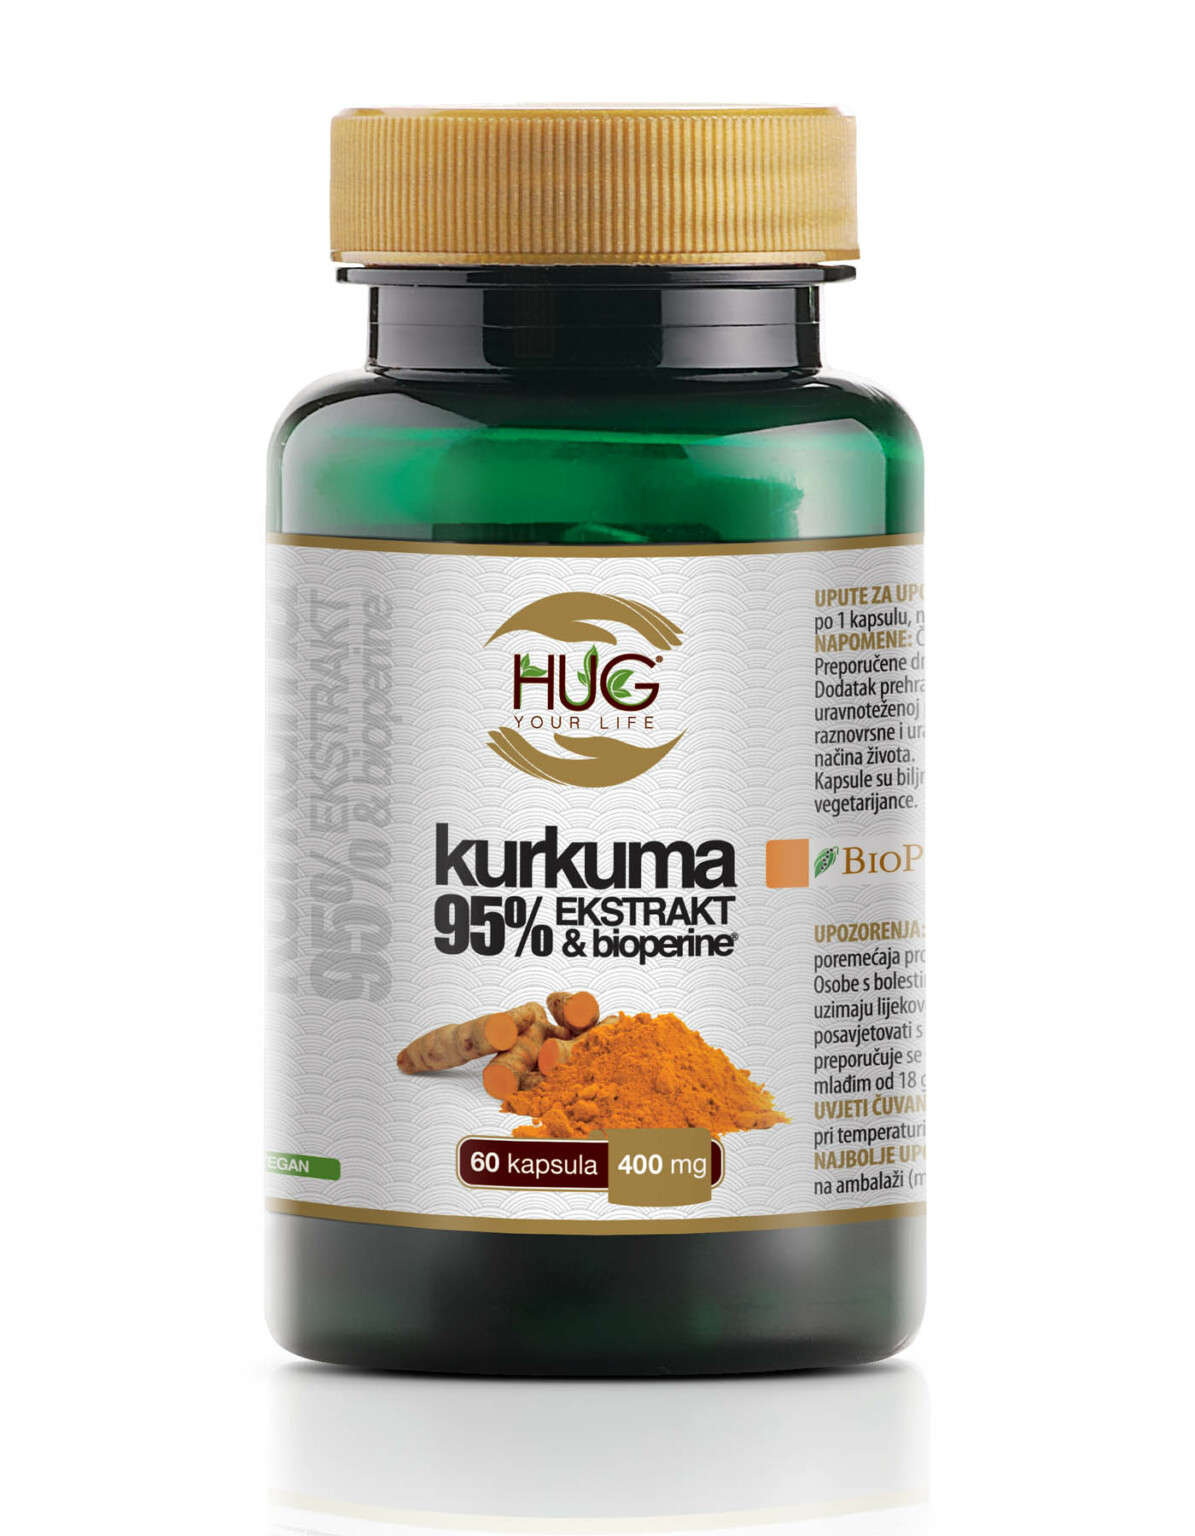 Hug Your Life Kurkuma 95% ekstrakt & BioPerine